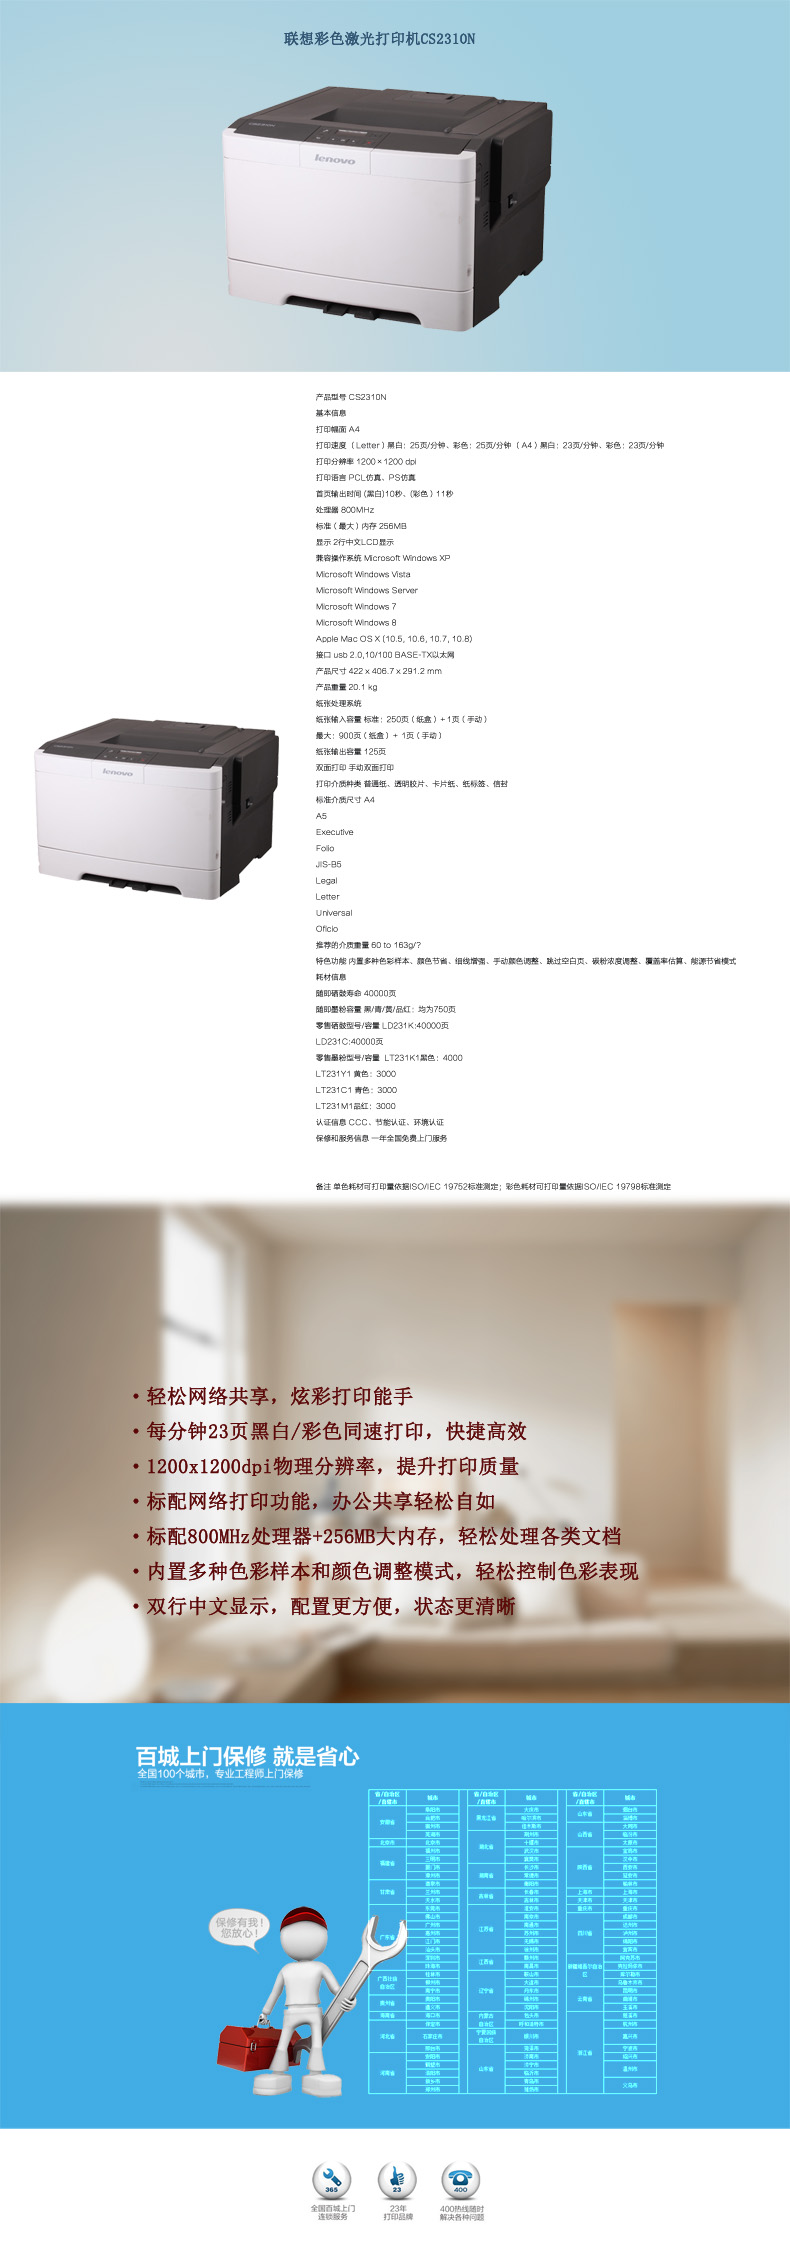 联想CS2310N商用高速有线网络彩色激光打印机